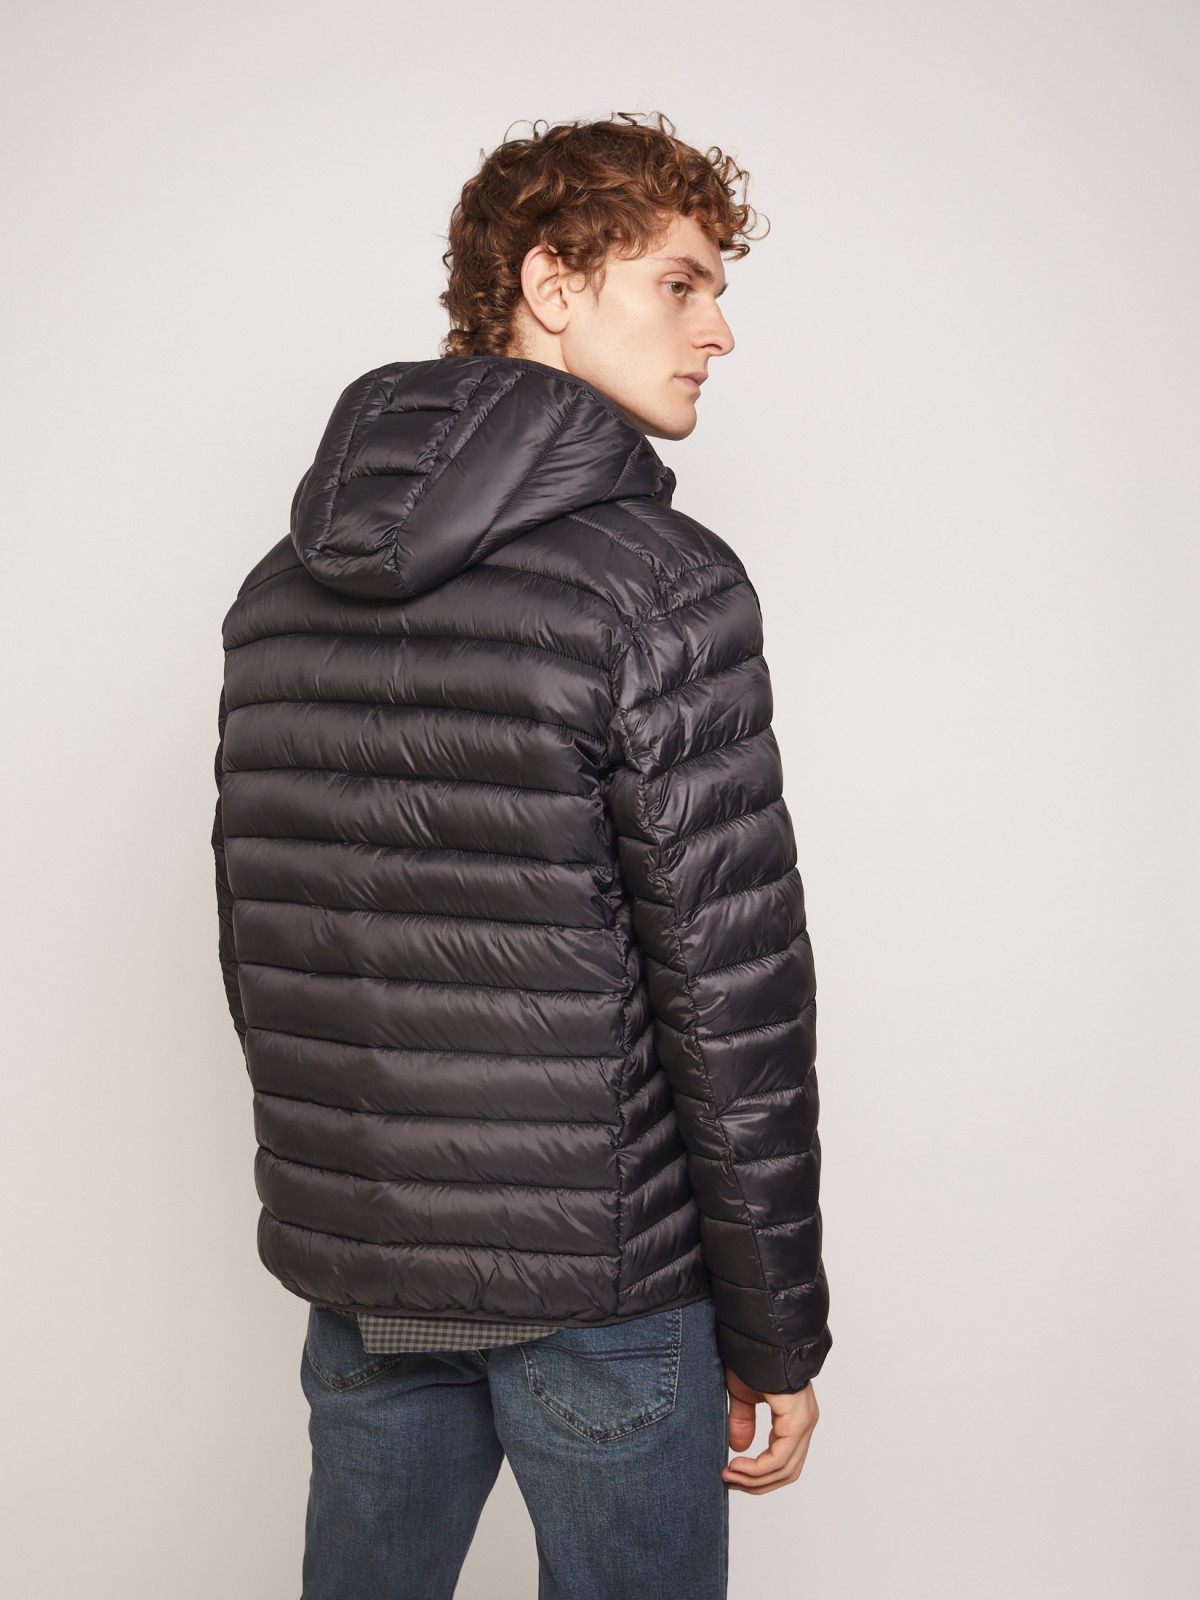 Ультралёгкая стёганая куртка с капюшоном zolla 011335114224, цвет черный, размер XS - фото 6